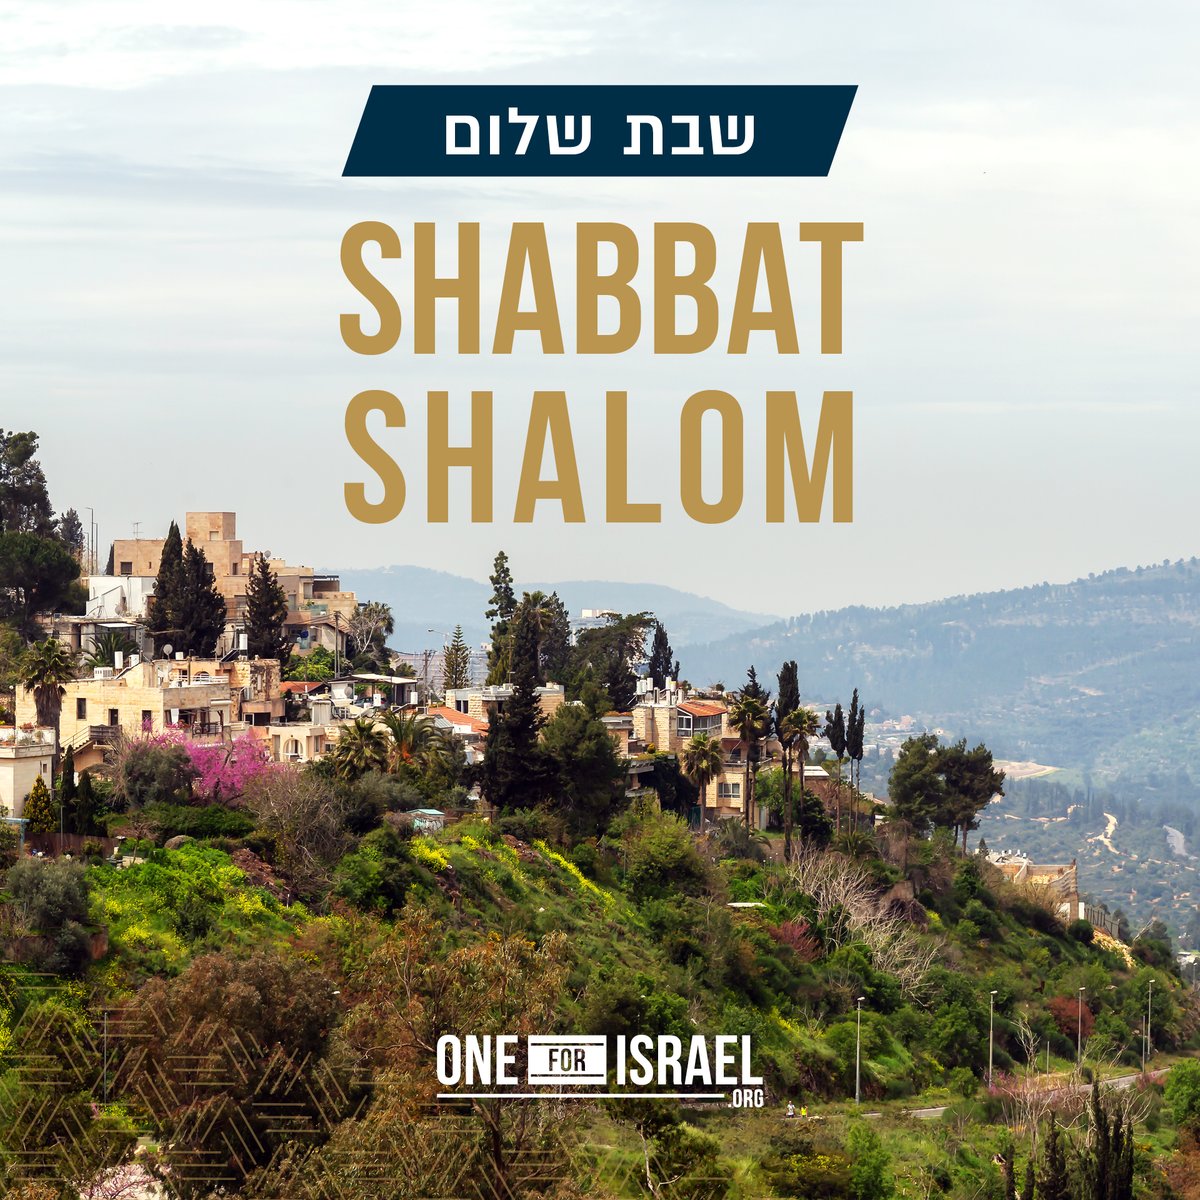 Shabbat Shalom from Jerusalem!